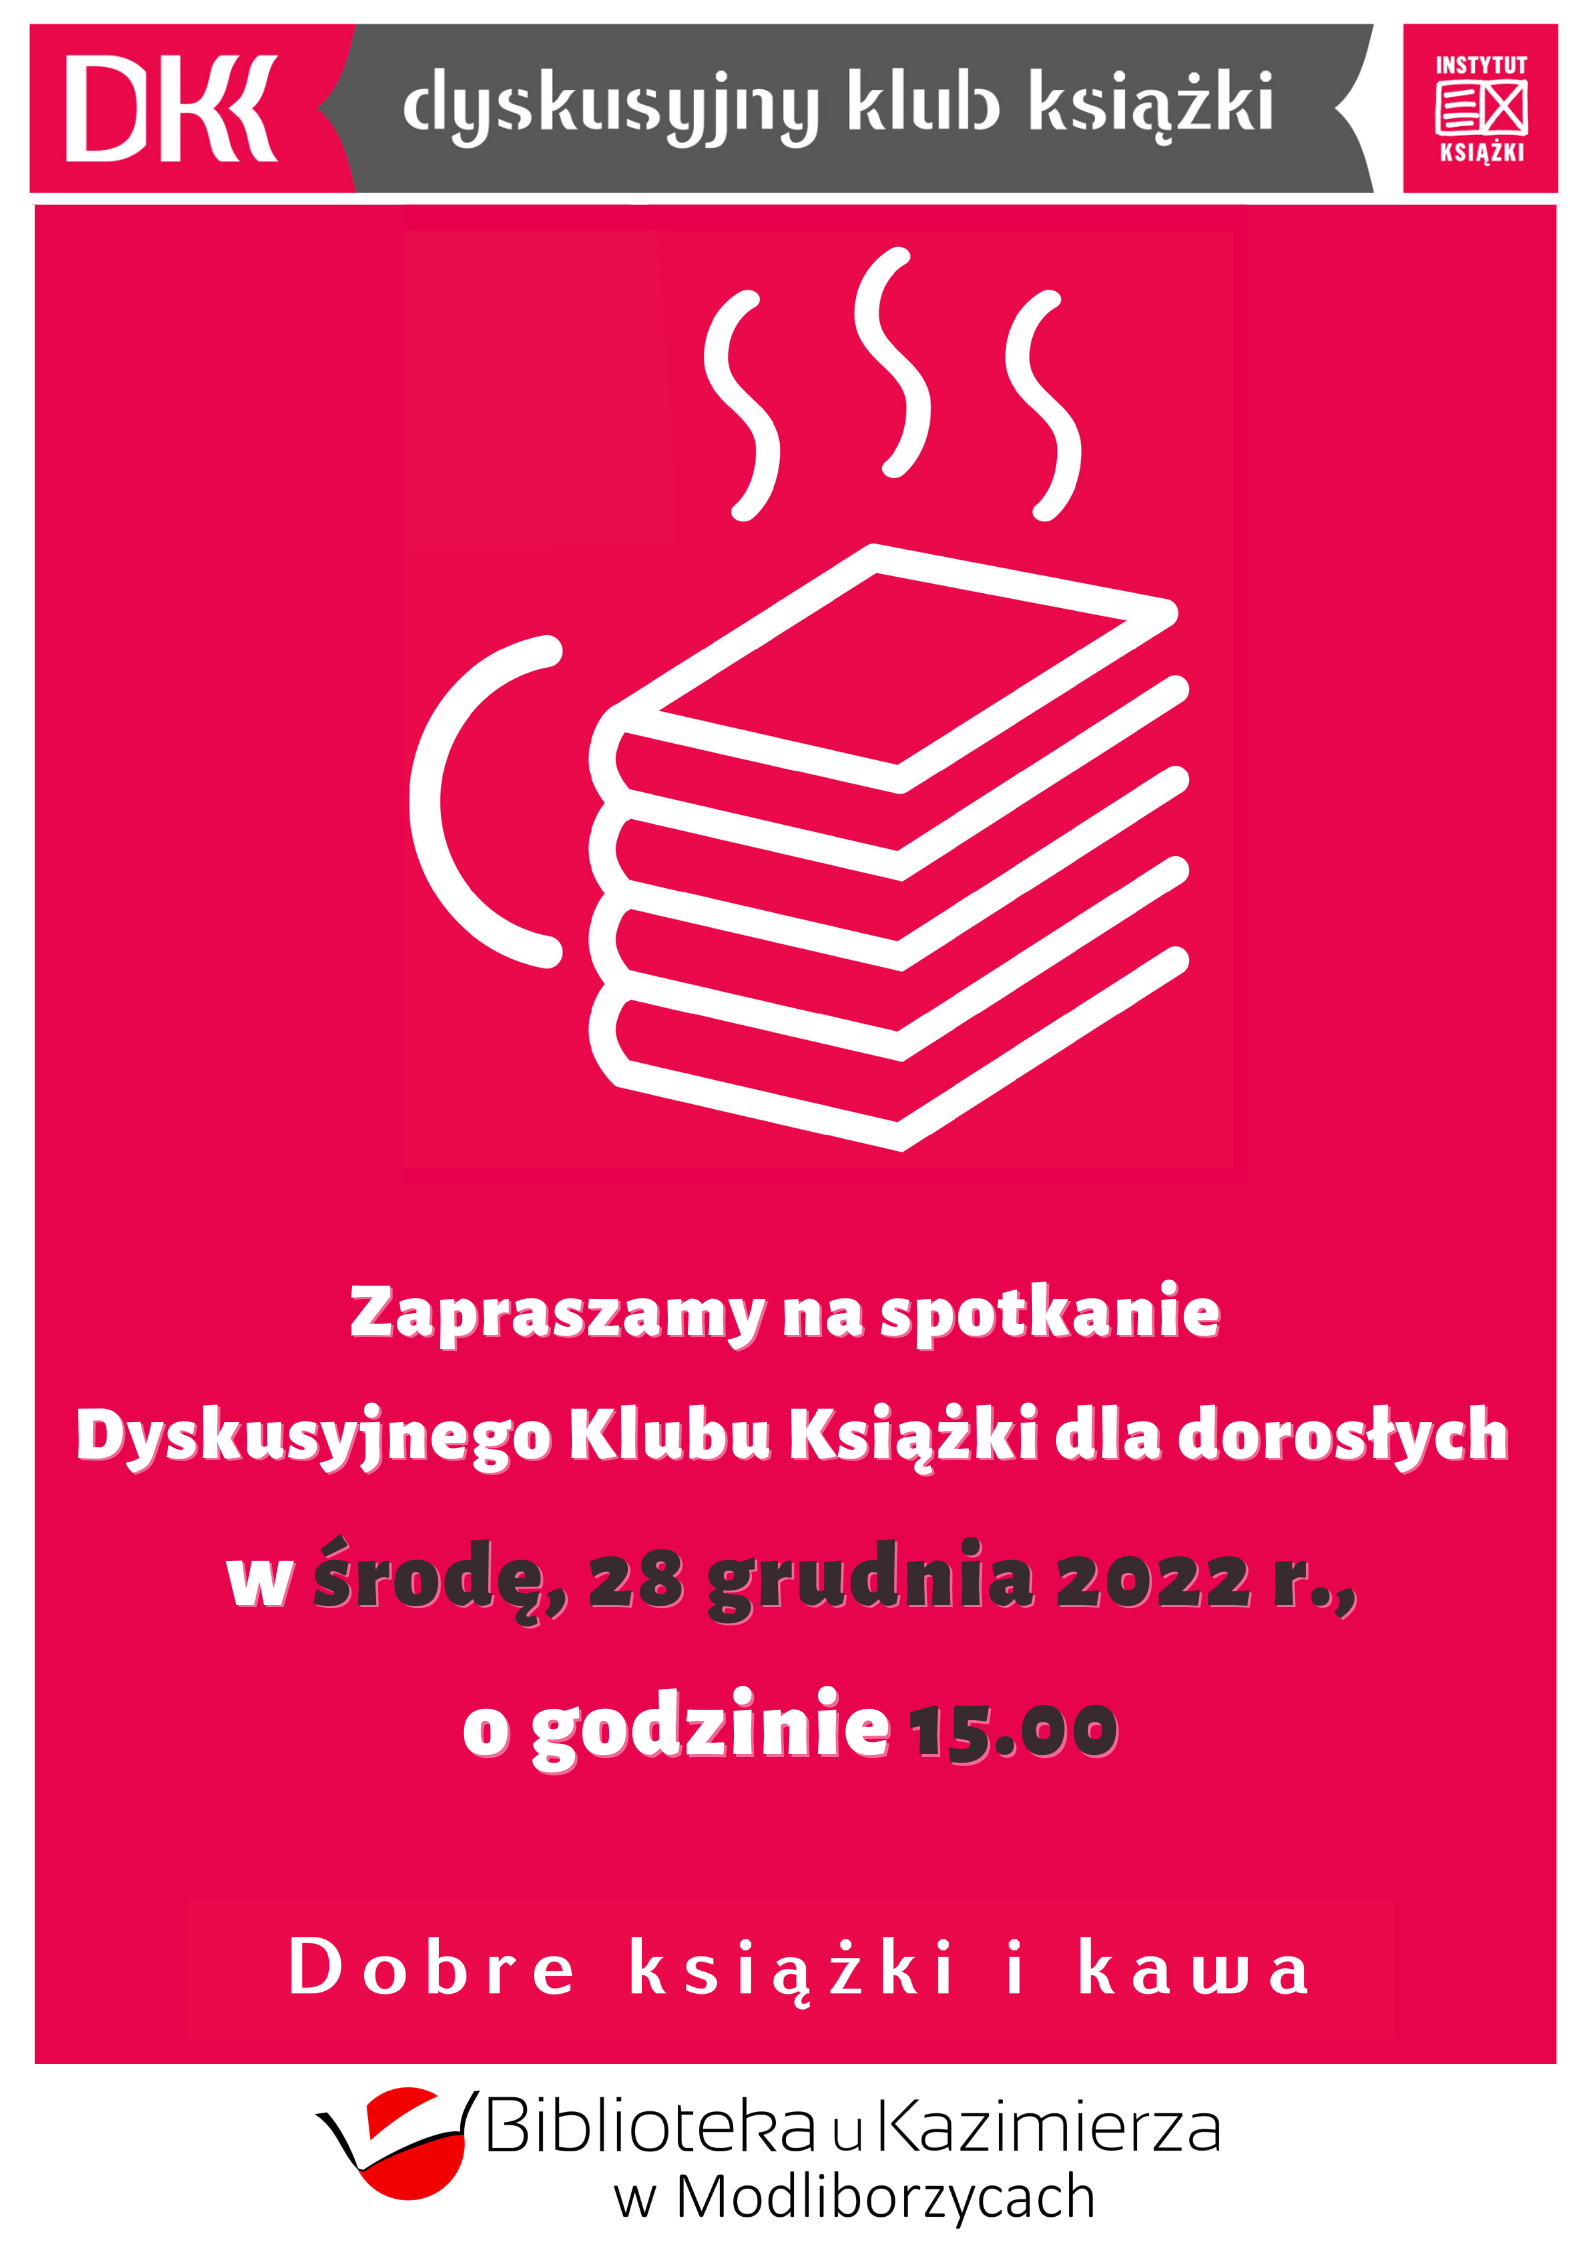  Zapraszamy na spotkanie Dyskusyjnego Klubu Książki dla dorosłych w środę, 28 grudnia 2022 r., o godzinie 15.00.